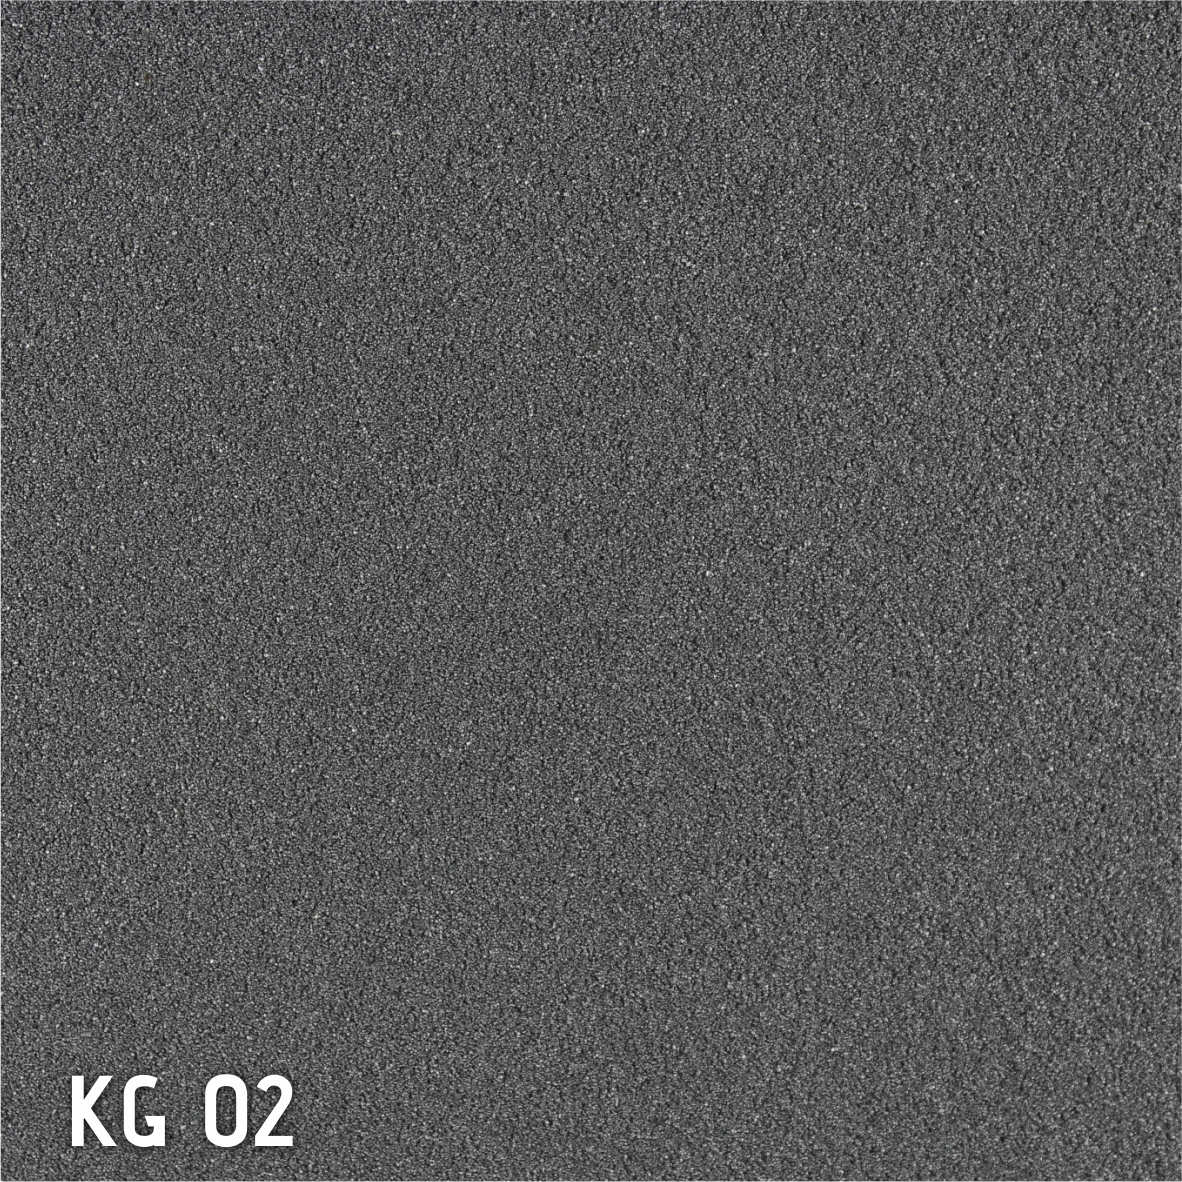 Revestimento quartzo flexível KG 02